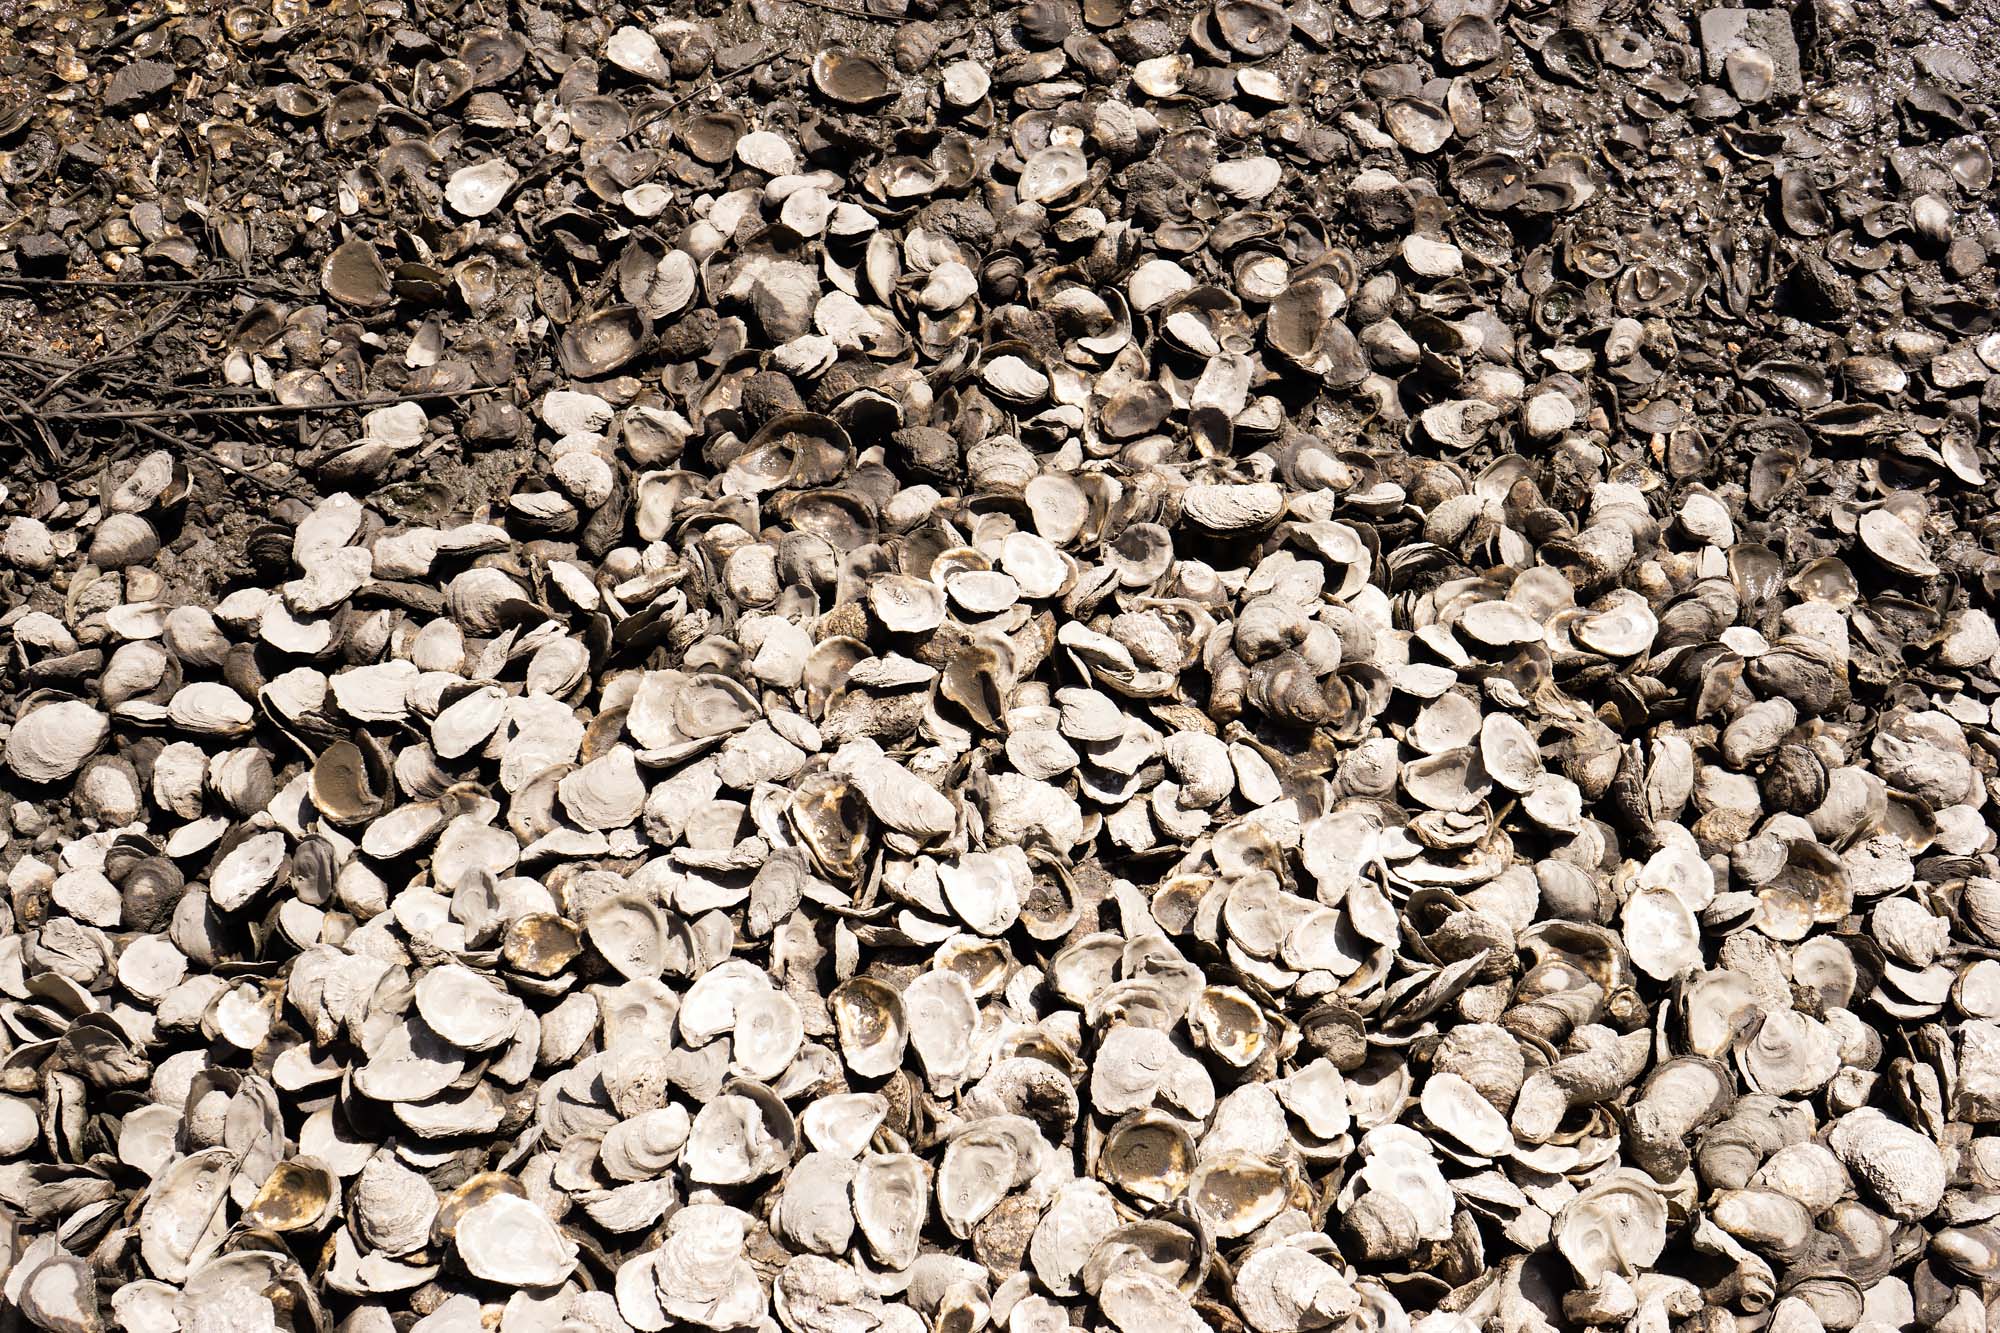 Gullah oyster shells